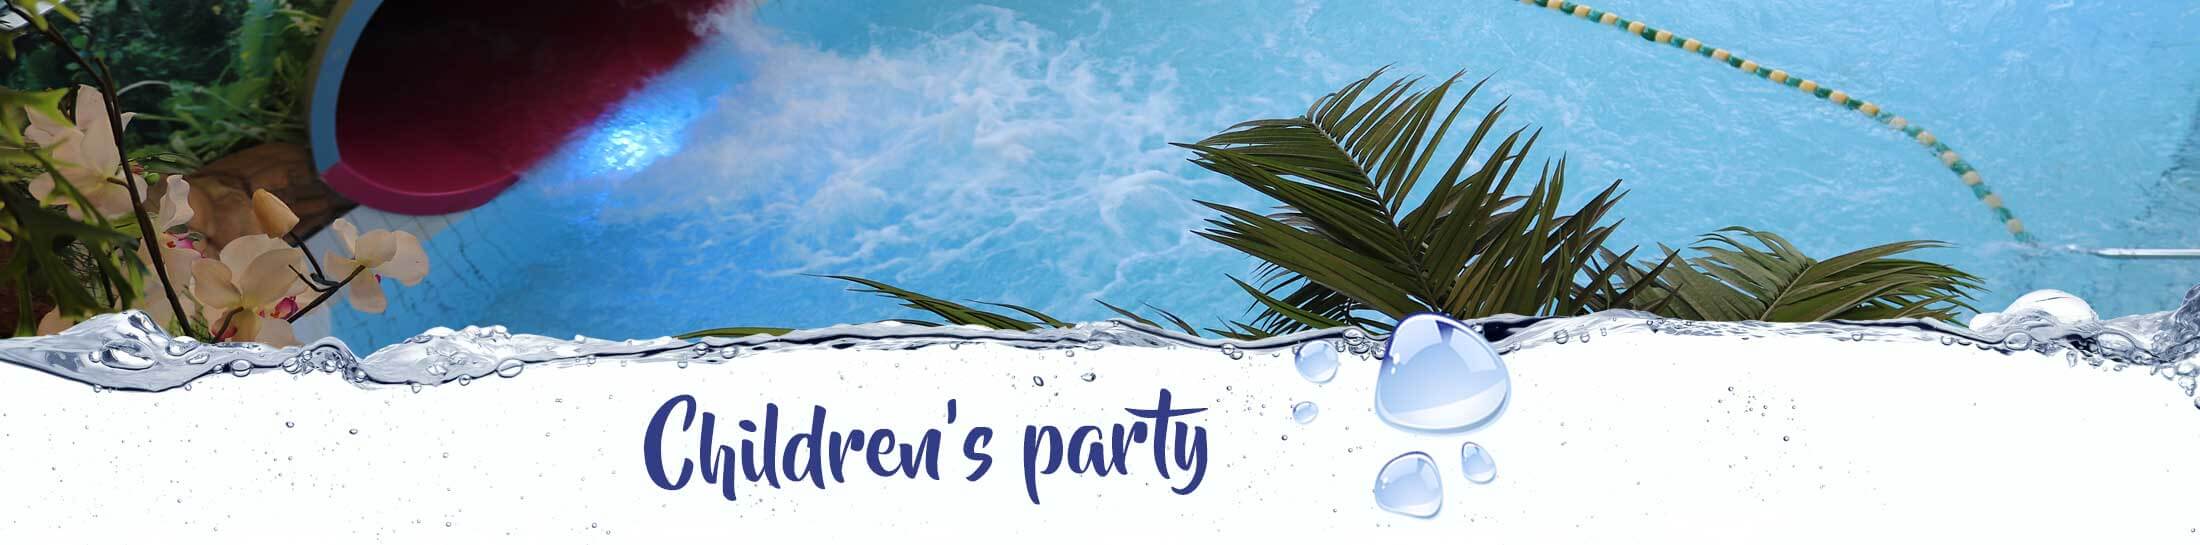 Childrens parties Swimfun Joure